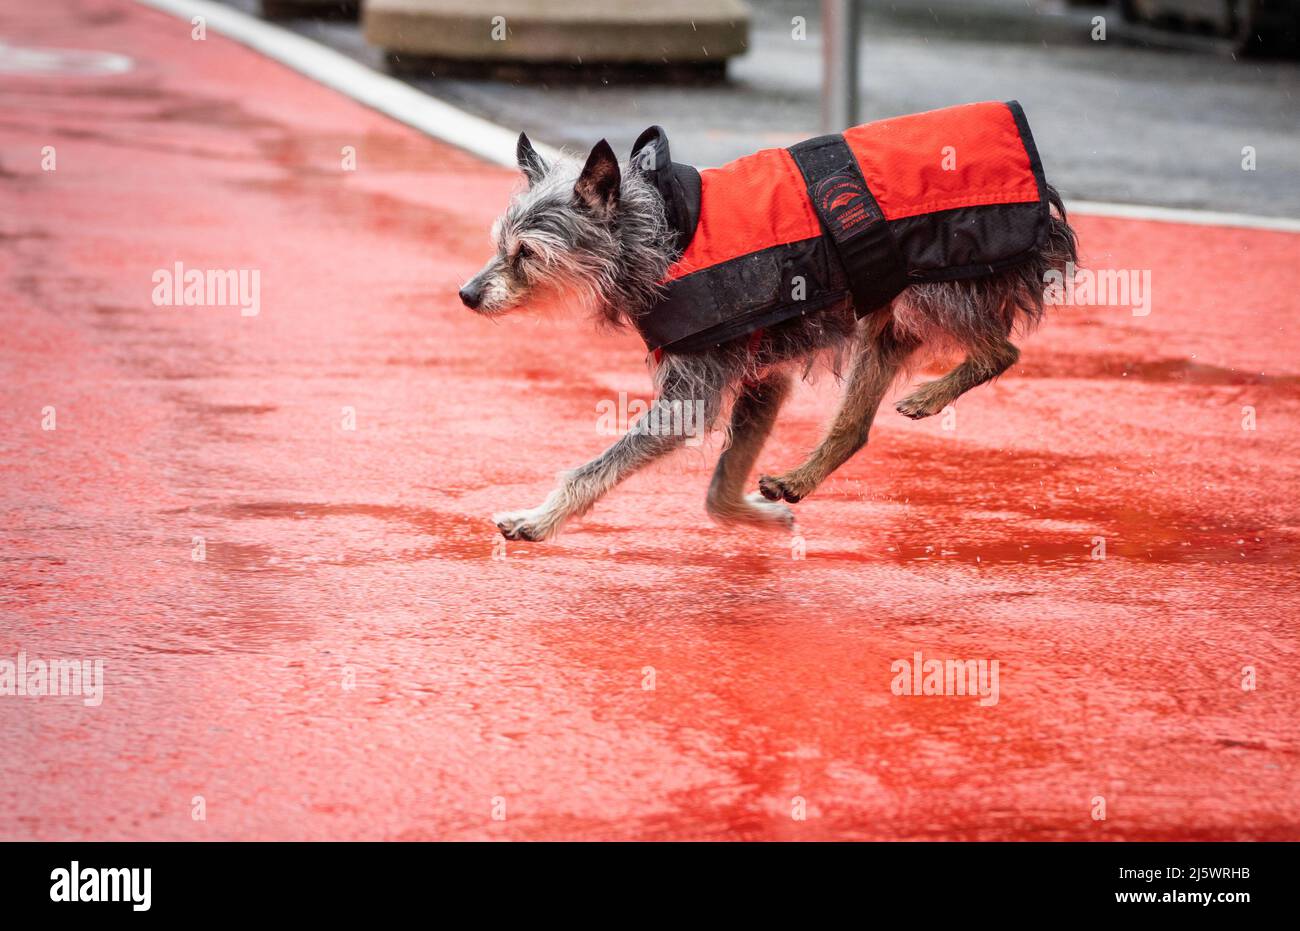 26 aprile 2022, Hessen, Francoforte sul meno: Fritzchen, il piccolo cane grel, corre dopo il suo proprietario al mattino in una pioggia costante e attraversa un percorso ciclistico rosso contrassegnato. Foto: Frank Rumpenhorst/dpa Foto Stock